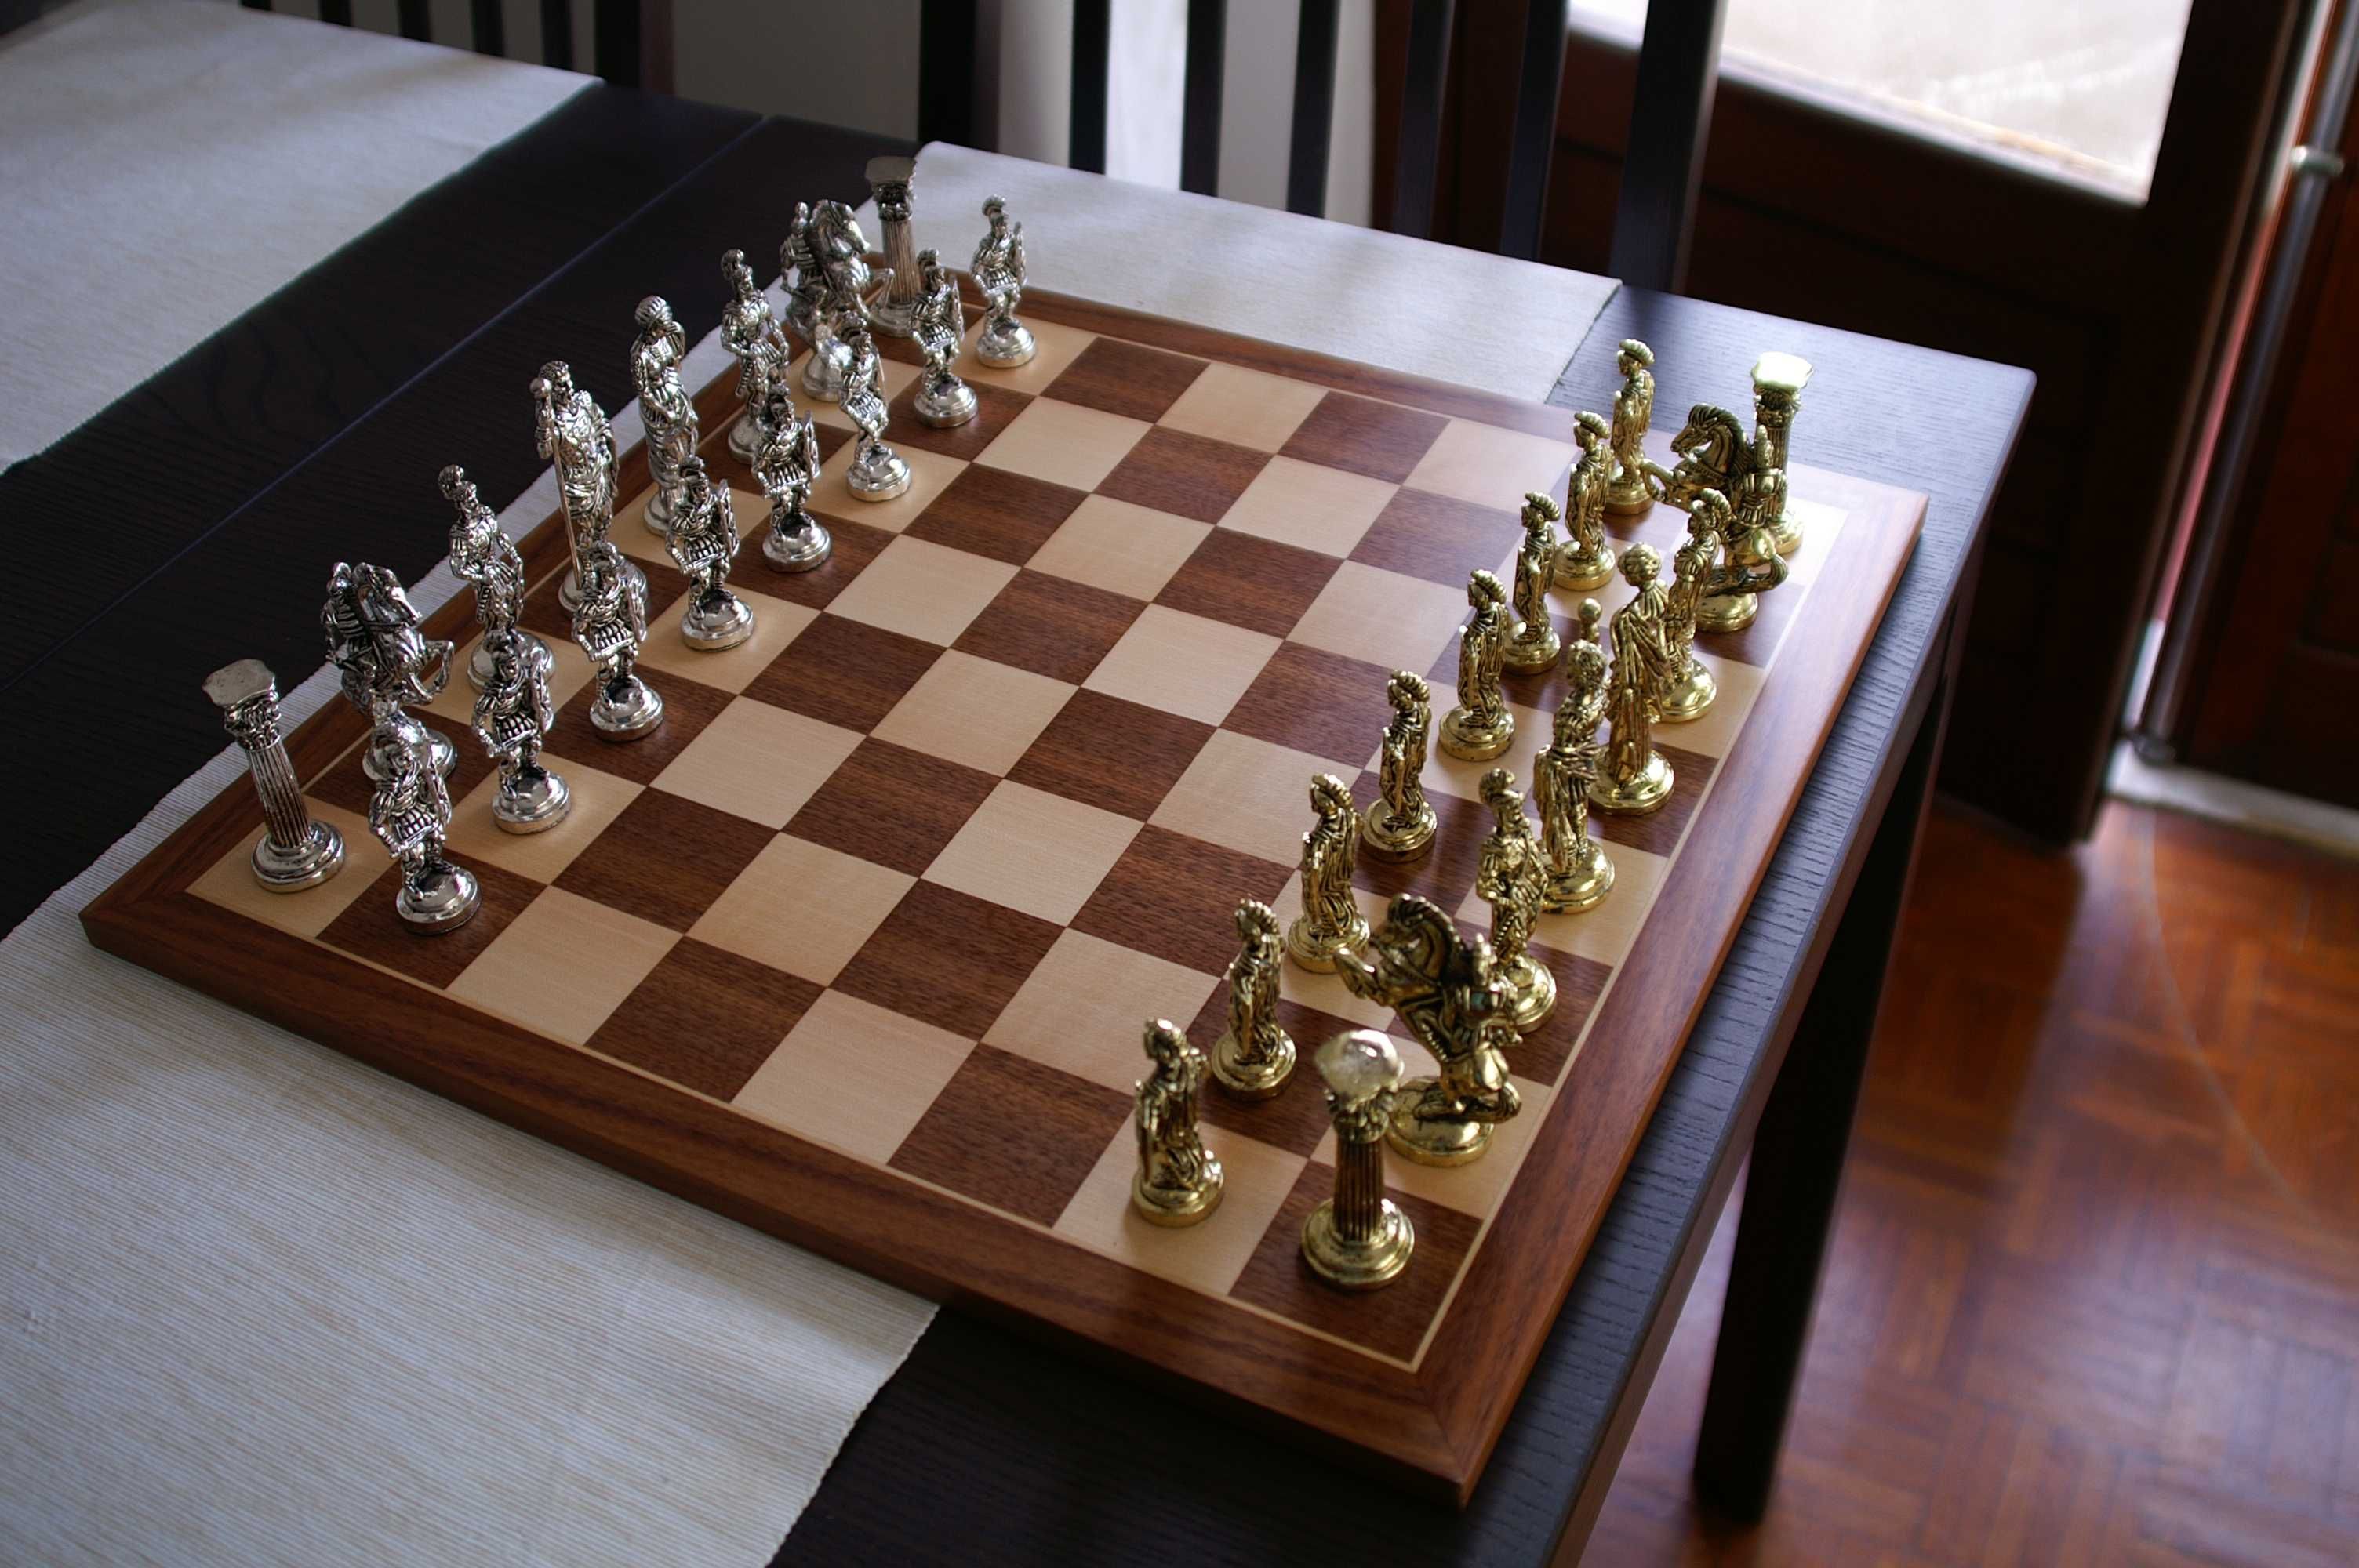 Tabuleiro de Xadrez em madeira 45x45 + 32 Peças em cerâmica São Victor • OLX  Portugal